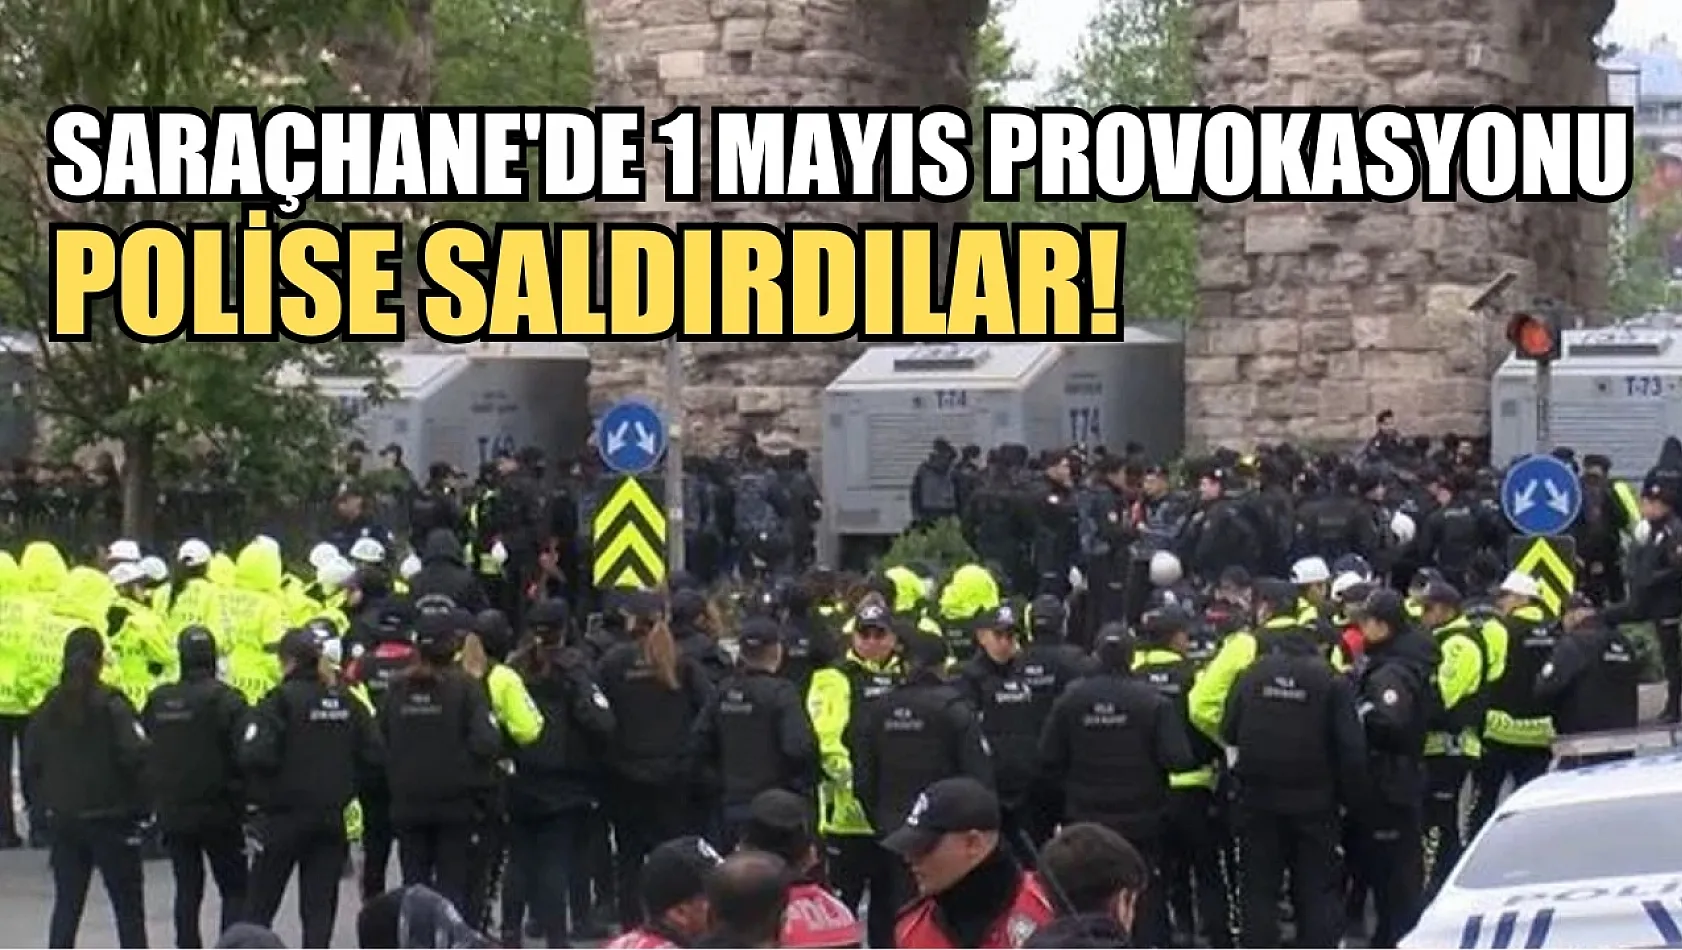 Saraçhane'de 1 Mayıs provokasyonu: Polise saldırdılar!